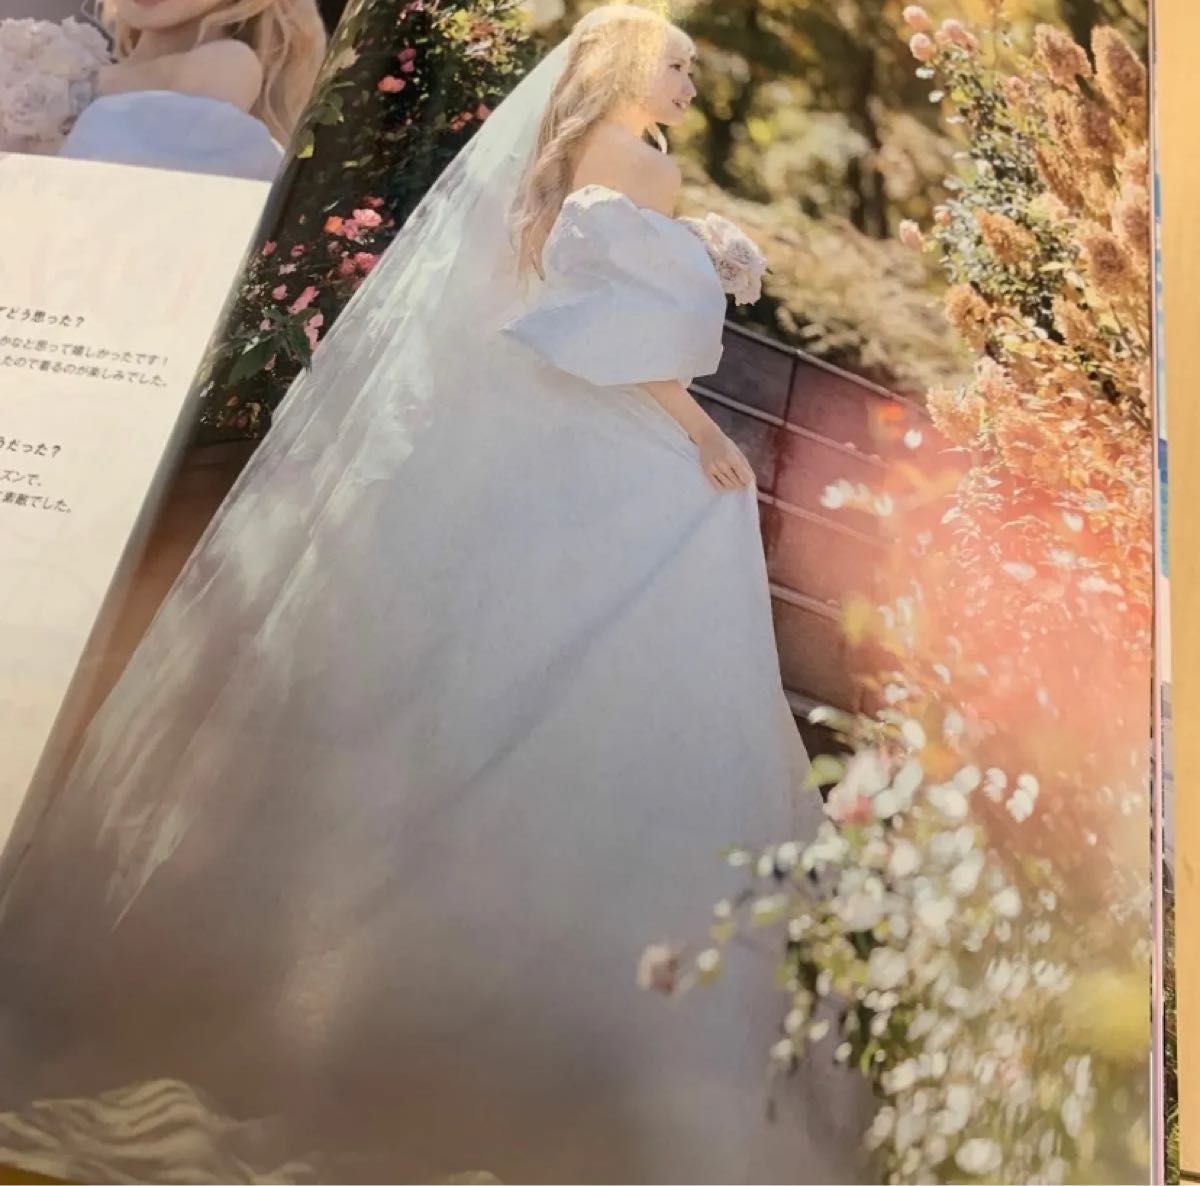 ゼクシィ 本田仁美 AKB48 女優 表紙 海外ウエディング ハワイ 雑誌 冊子 アイドル AKB 坂道 結婚 ウエディングドレス